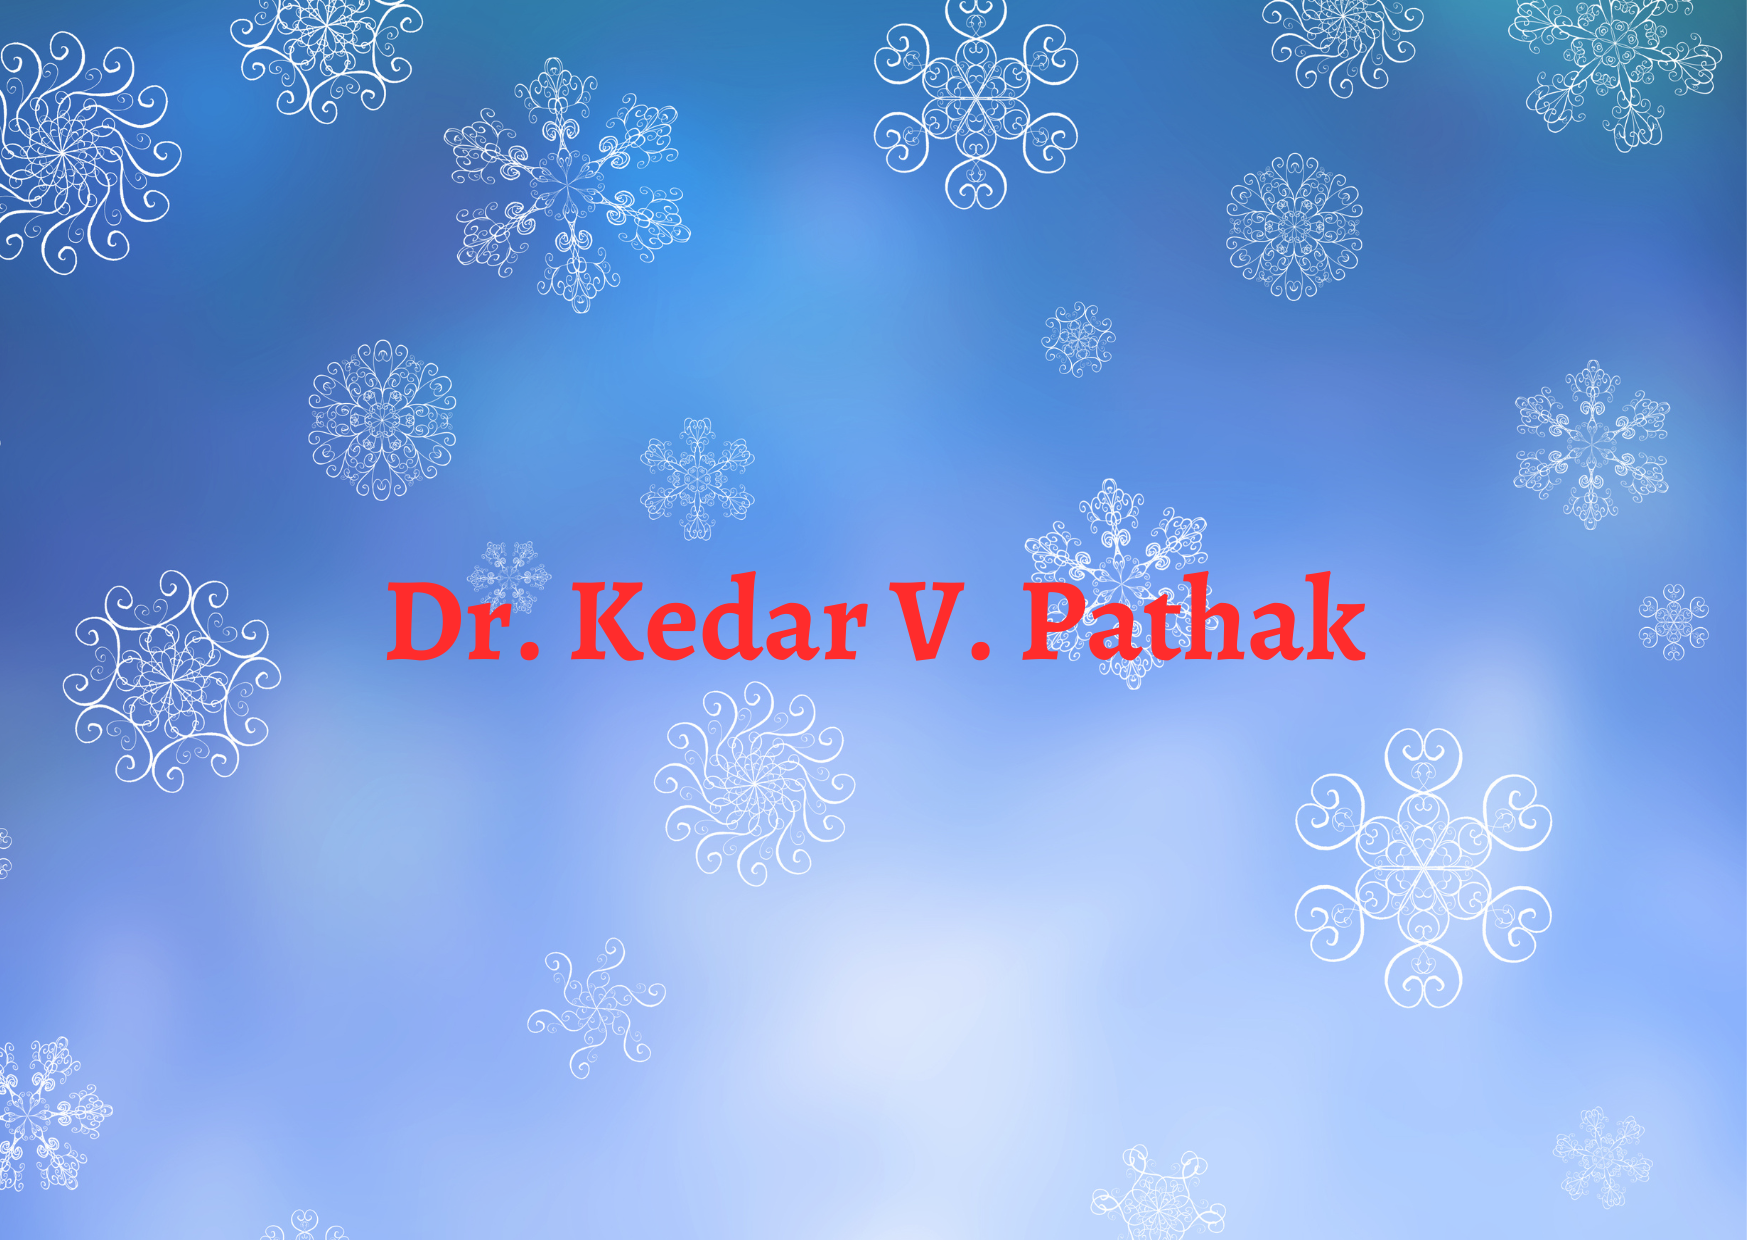 Dr. Kedar V. Pathak,   